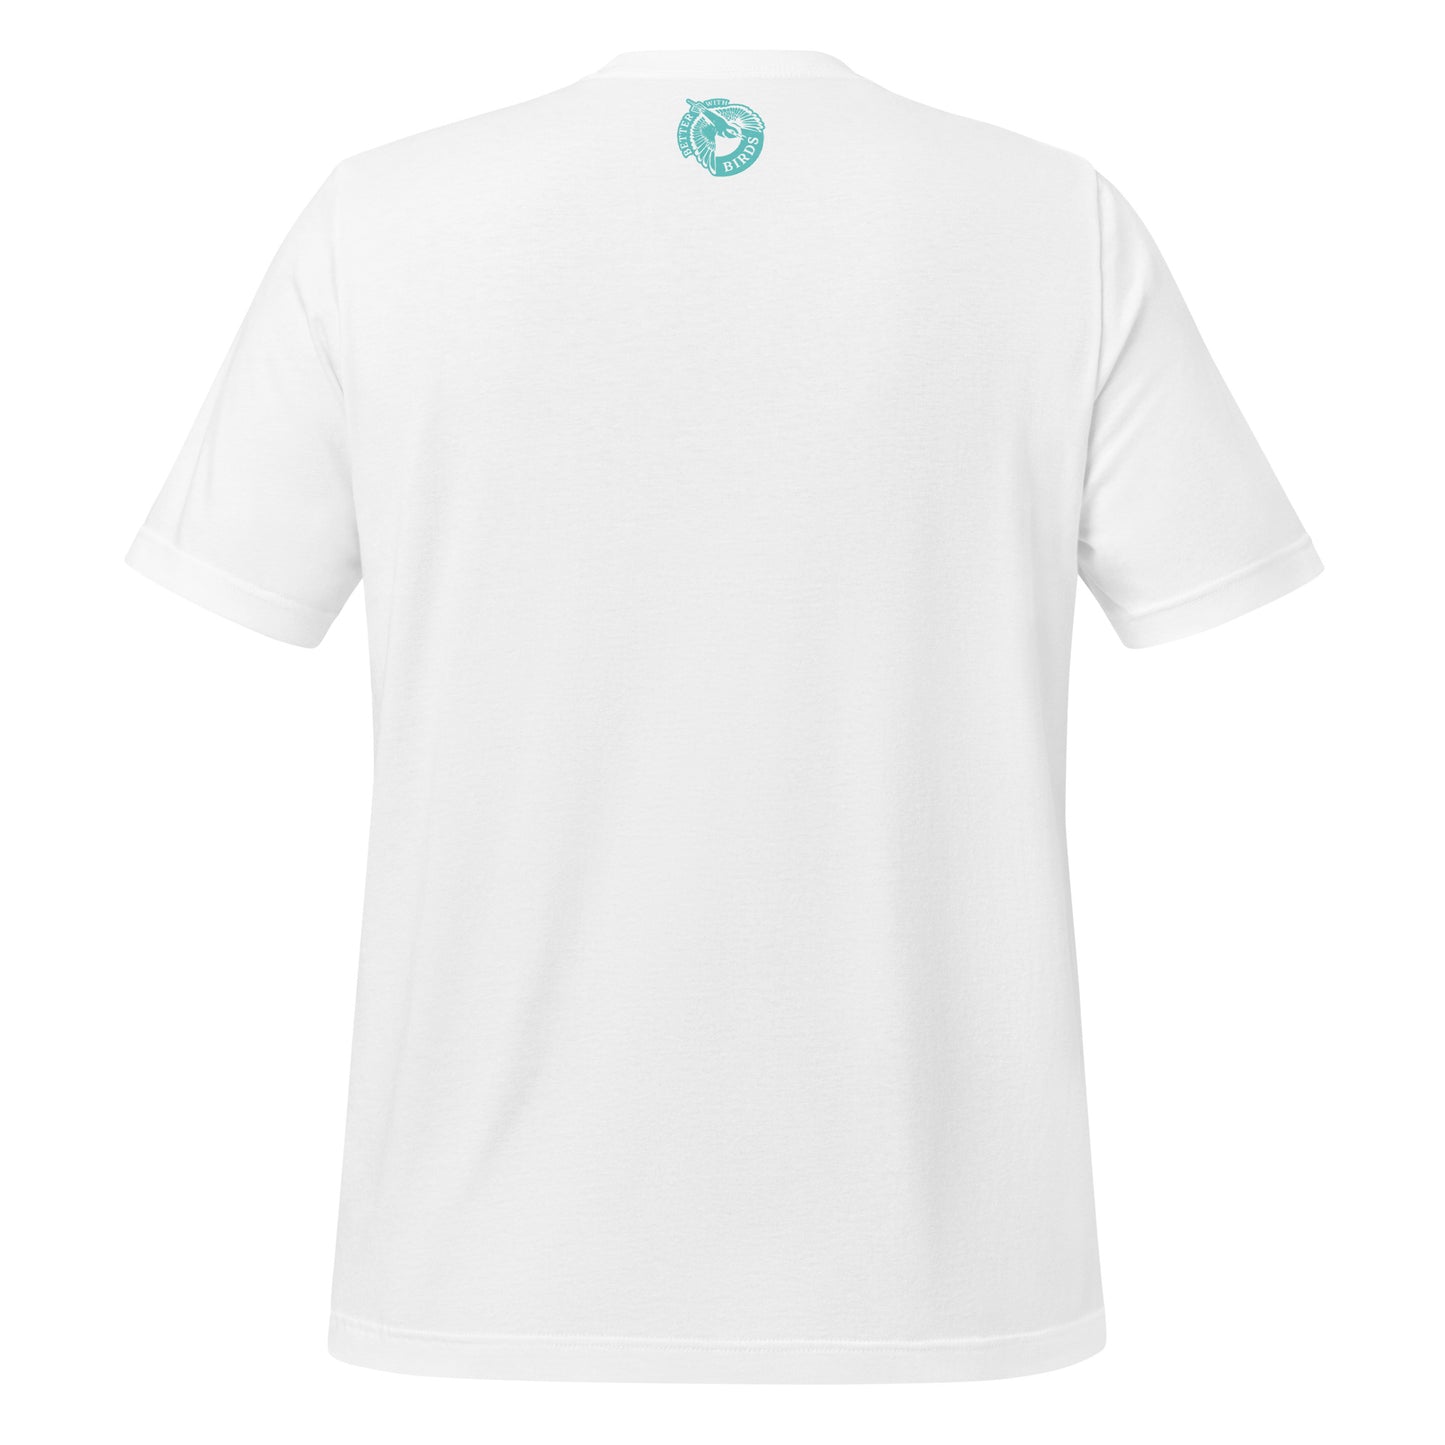 Chickadee Lightweight Cotton Unisex T-Shirt